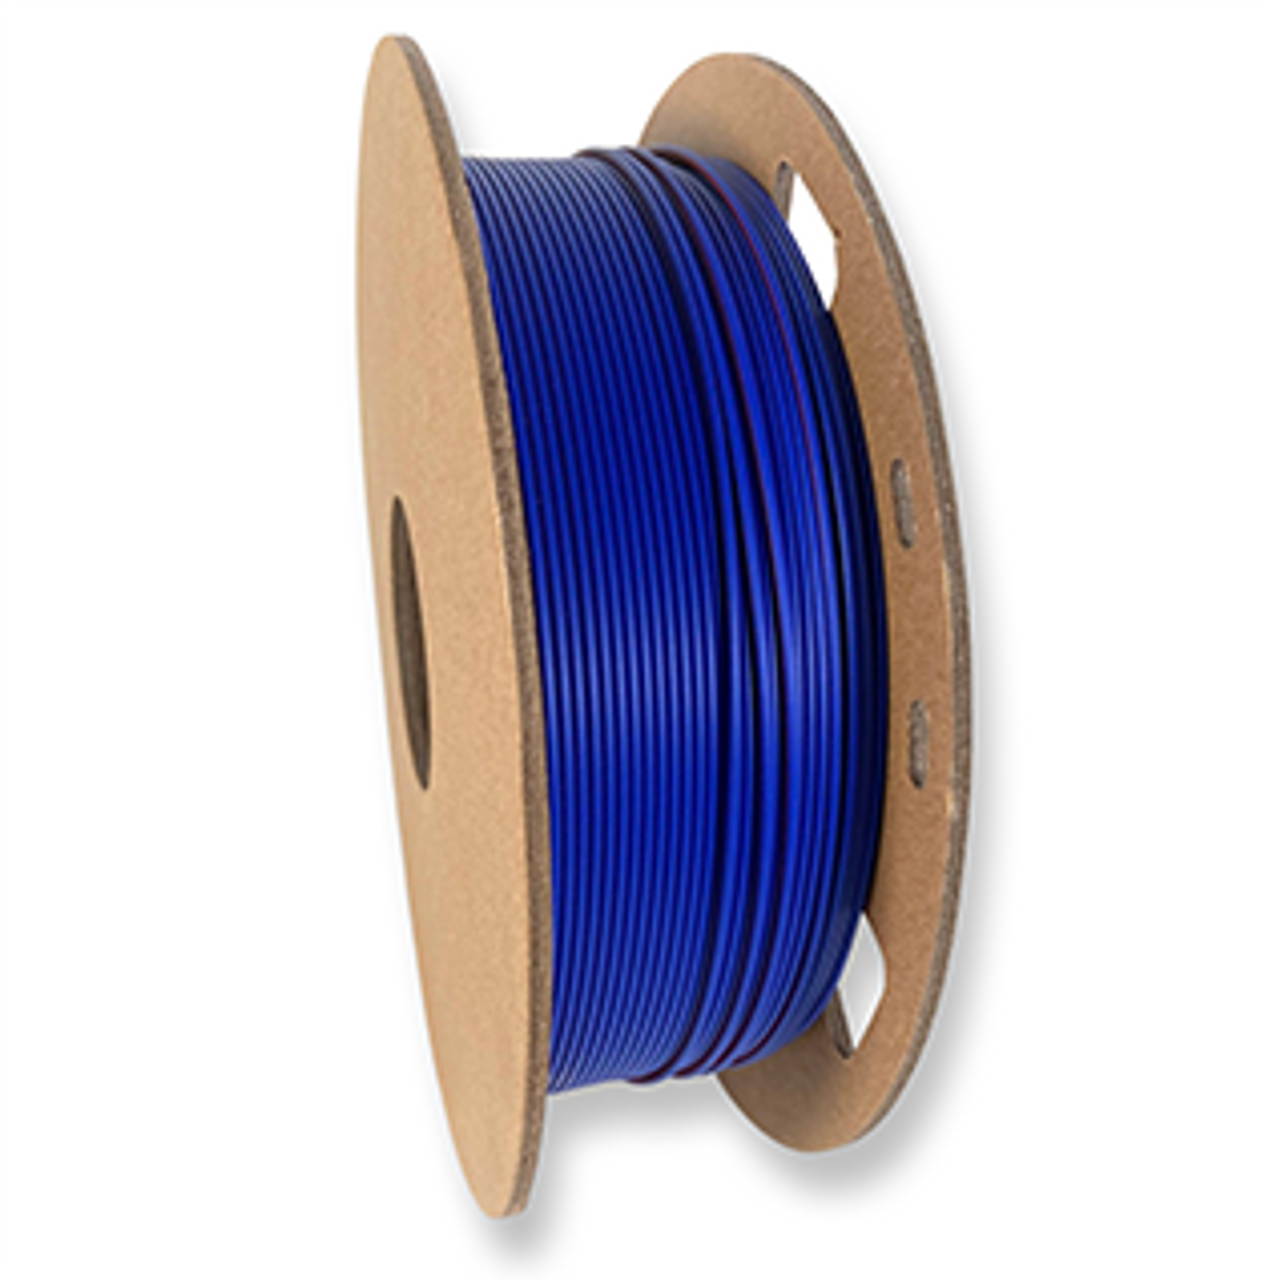 Fuse 3D Matte Dual Colour Silk Blue-Red 3D Printing Filament